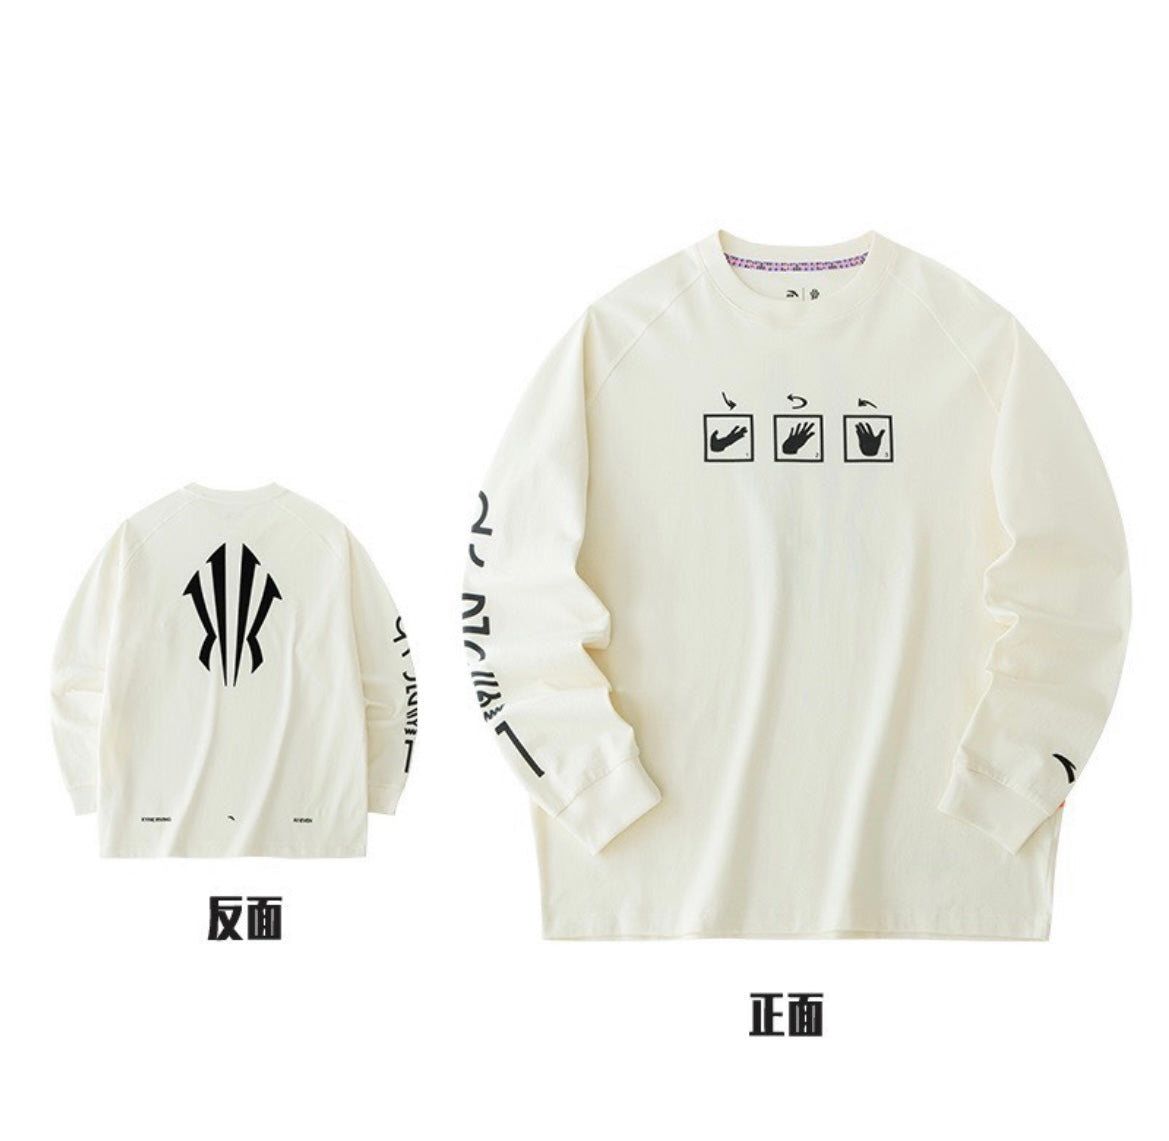 Kyrie Irving x Anta KAI 1 Tour Crewneck Pullover Sweatshirt - Black/White